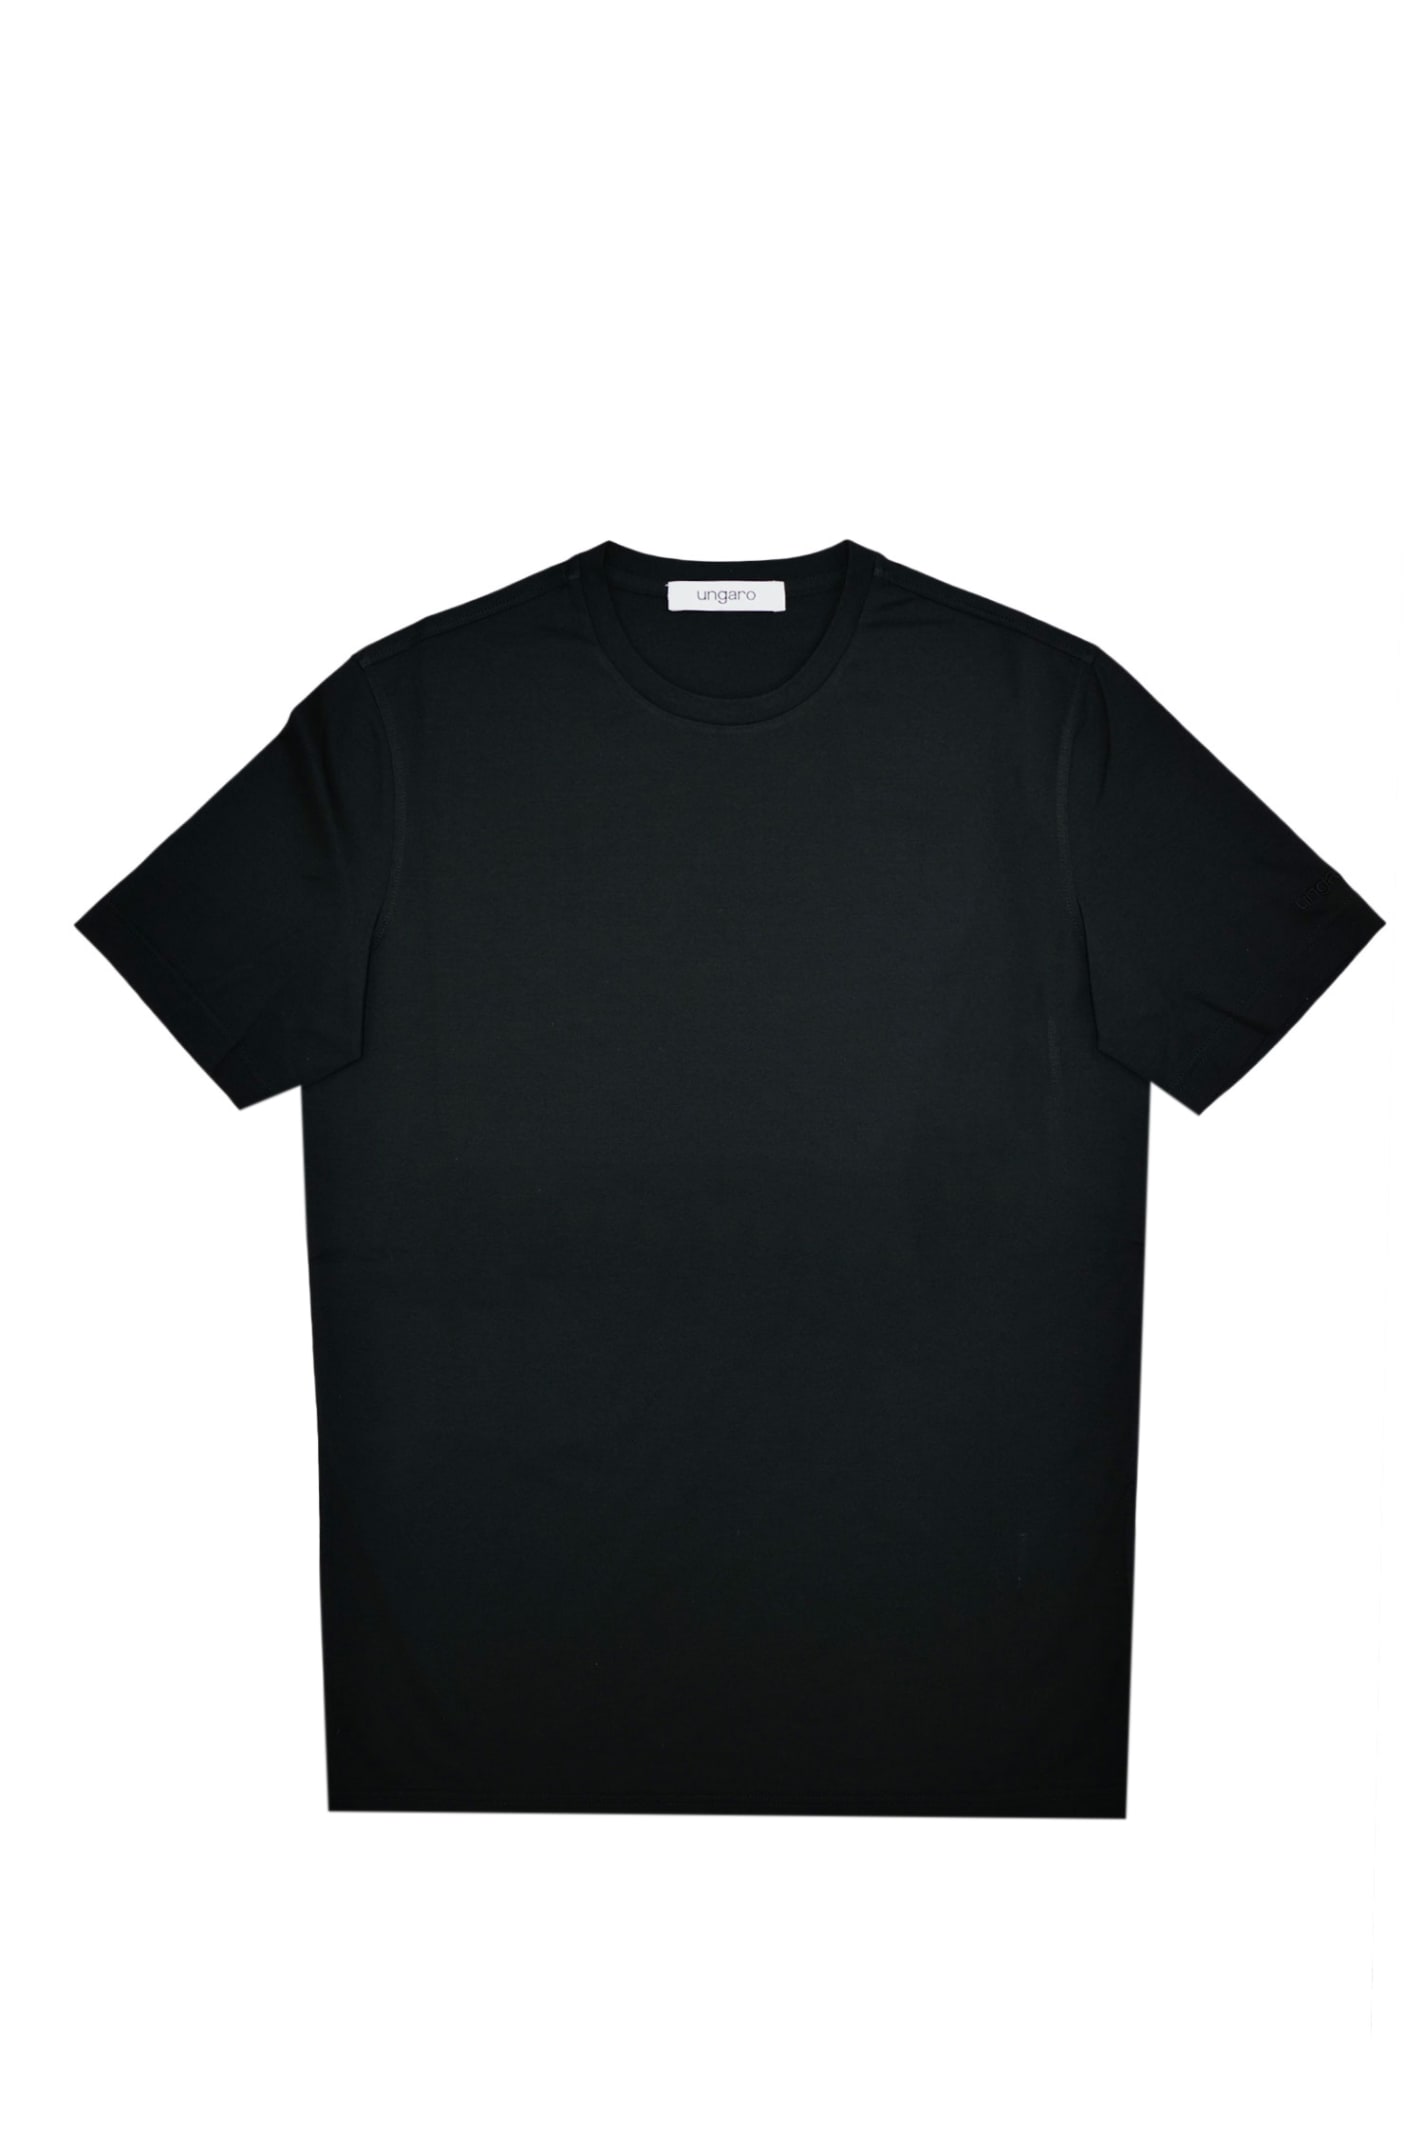 Emanuel Ungaro T-shirt In Black